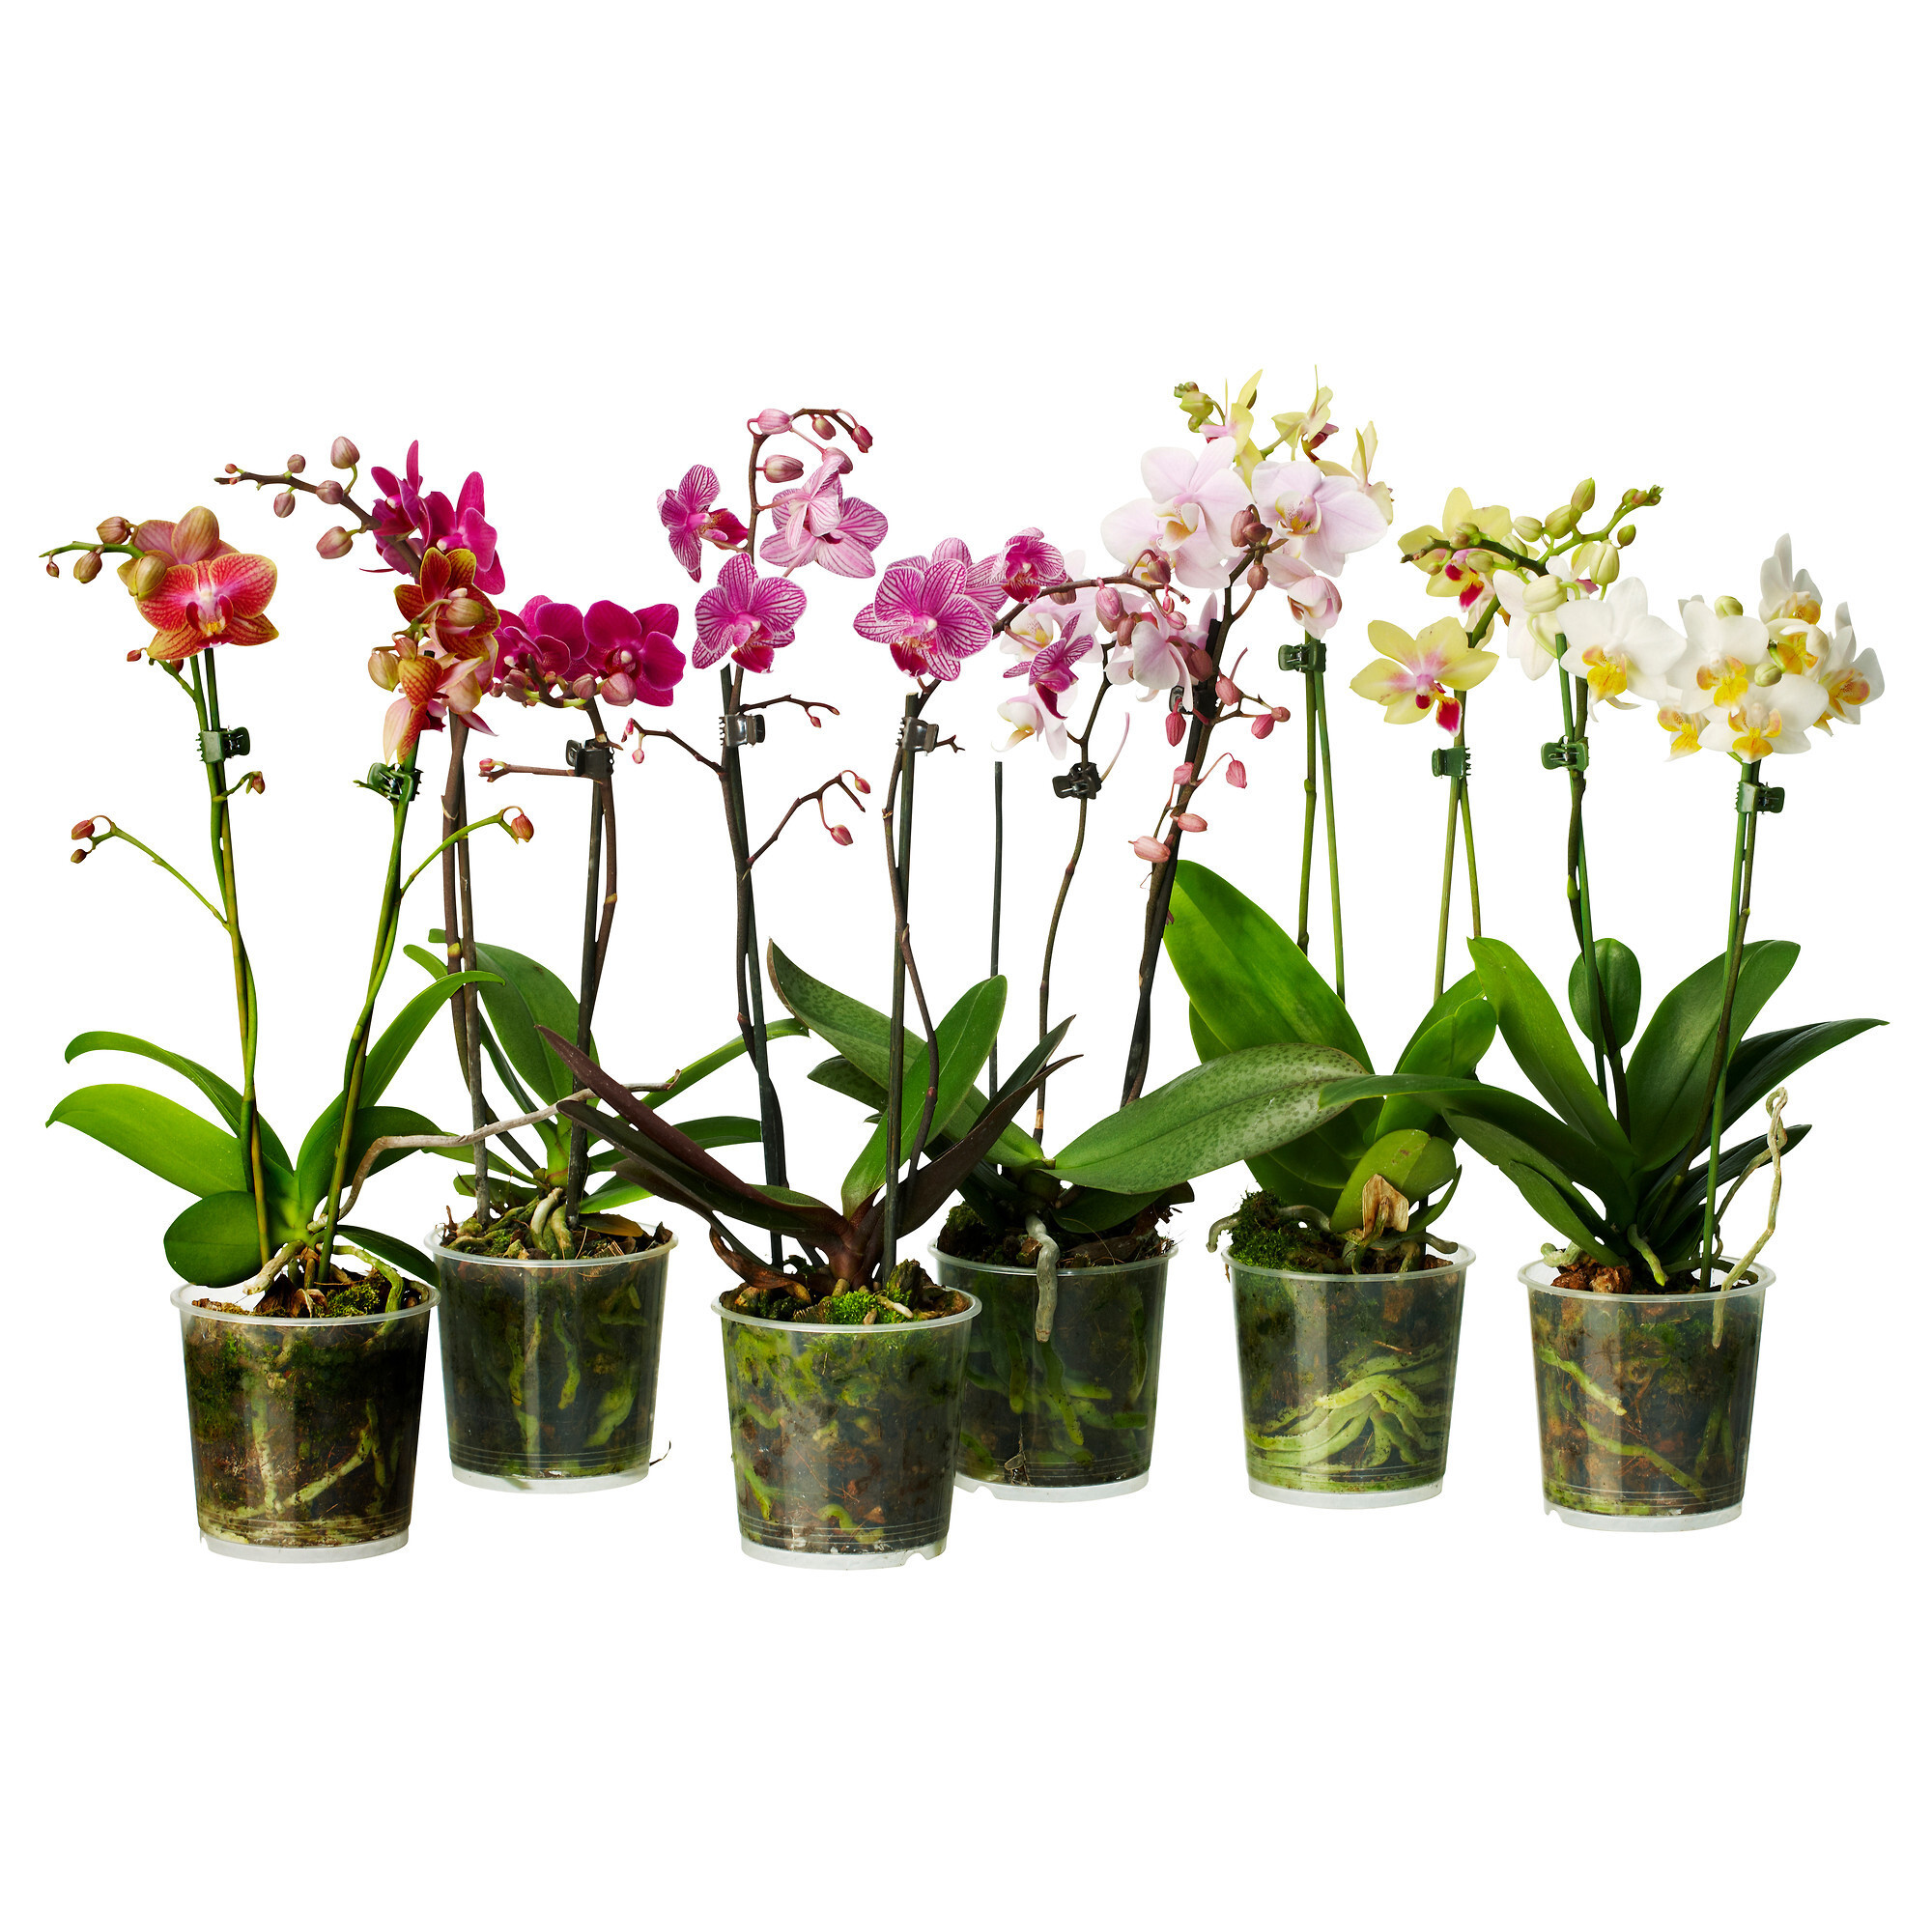 Купить орхидею в ставрополе. Орхидея микс d12 h60. Фаленопсис микс d12 h40. Орхидея фаленопсис микс. Цветы фаленопсис микс.